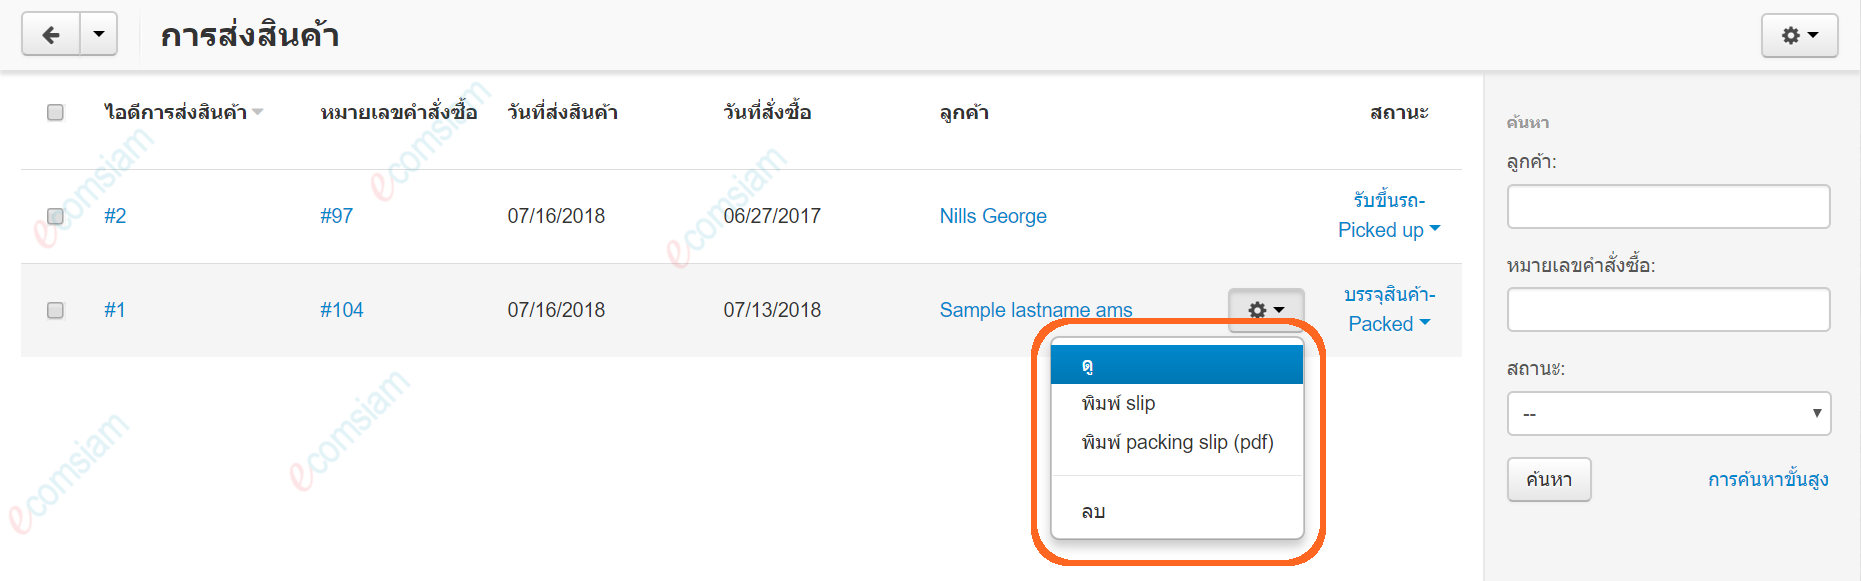 เว็บไซต์สำเร็จรูปไทย - คู่มือร้านออนไลน์ - สั่งซื้อ - พิมพ์เอกสารการจัดส่ง packing slips